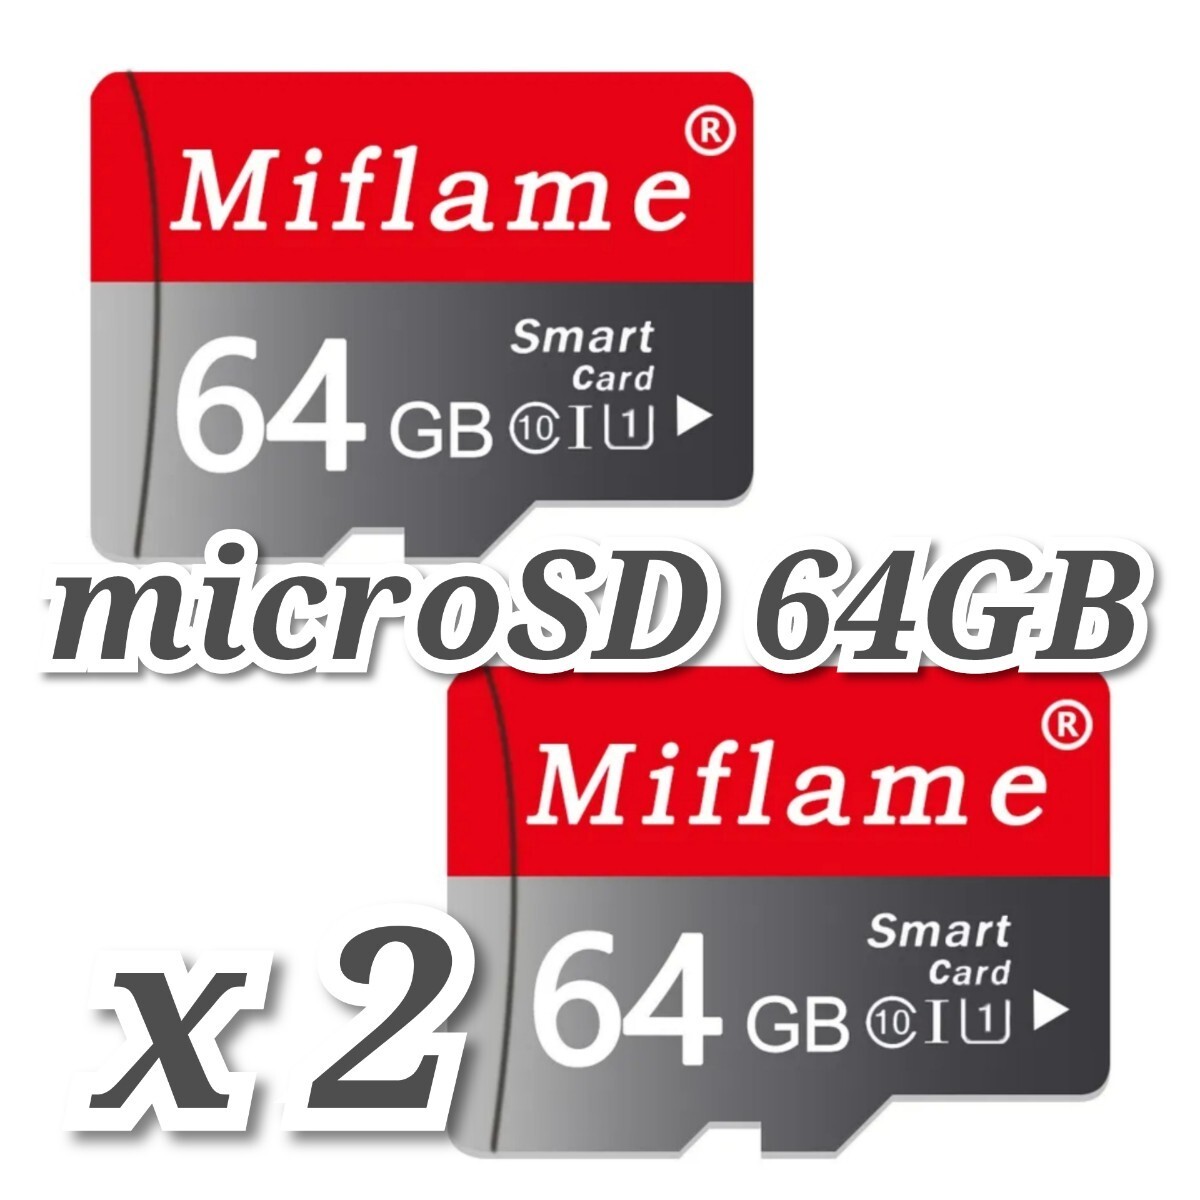 【送料無料】マイクロSDカード 64GB 2枚 class10 2個 microSD microSDXC マイクロSD 高速 MIFLAME 64GB RED-GRAY_画像2